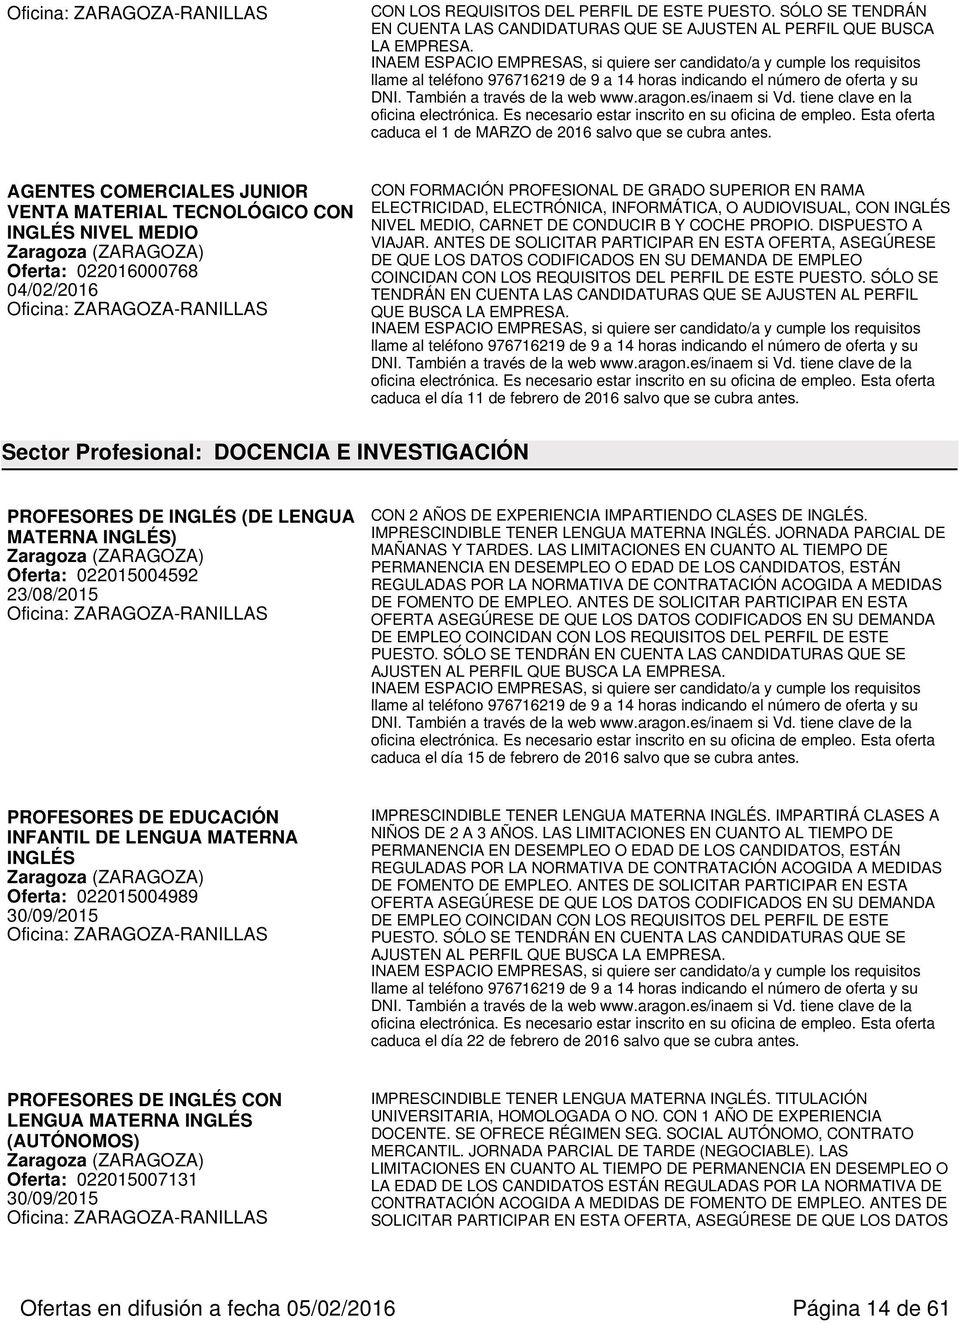 AGENTES COMERCIALES JUNIOR VENTA MATERIAL TECNOLÓGICO CON INGLÉS NIVEL MEDIO Oferta: 022016000768 04/02/2016 CON FORMACIÓN PROFESIONAL DE GRADO SUPERIOR EN RAMA ELECTRICIDAD, ELECTRÓNICA,